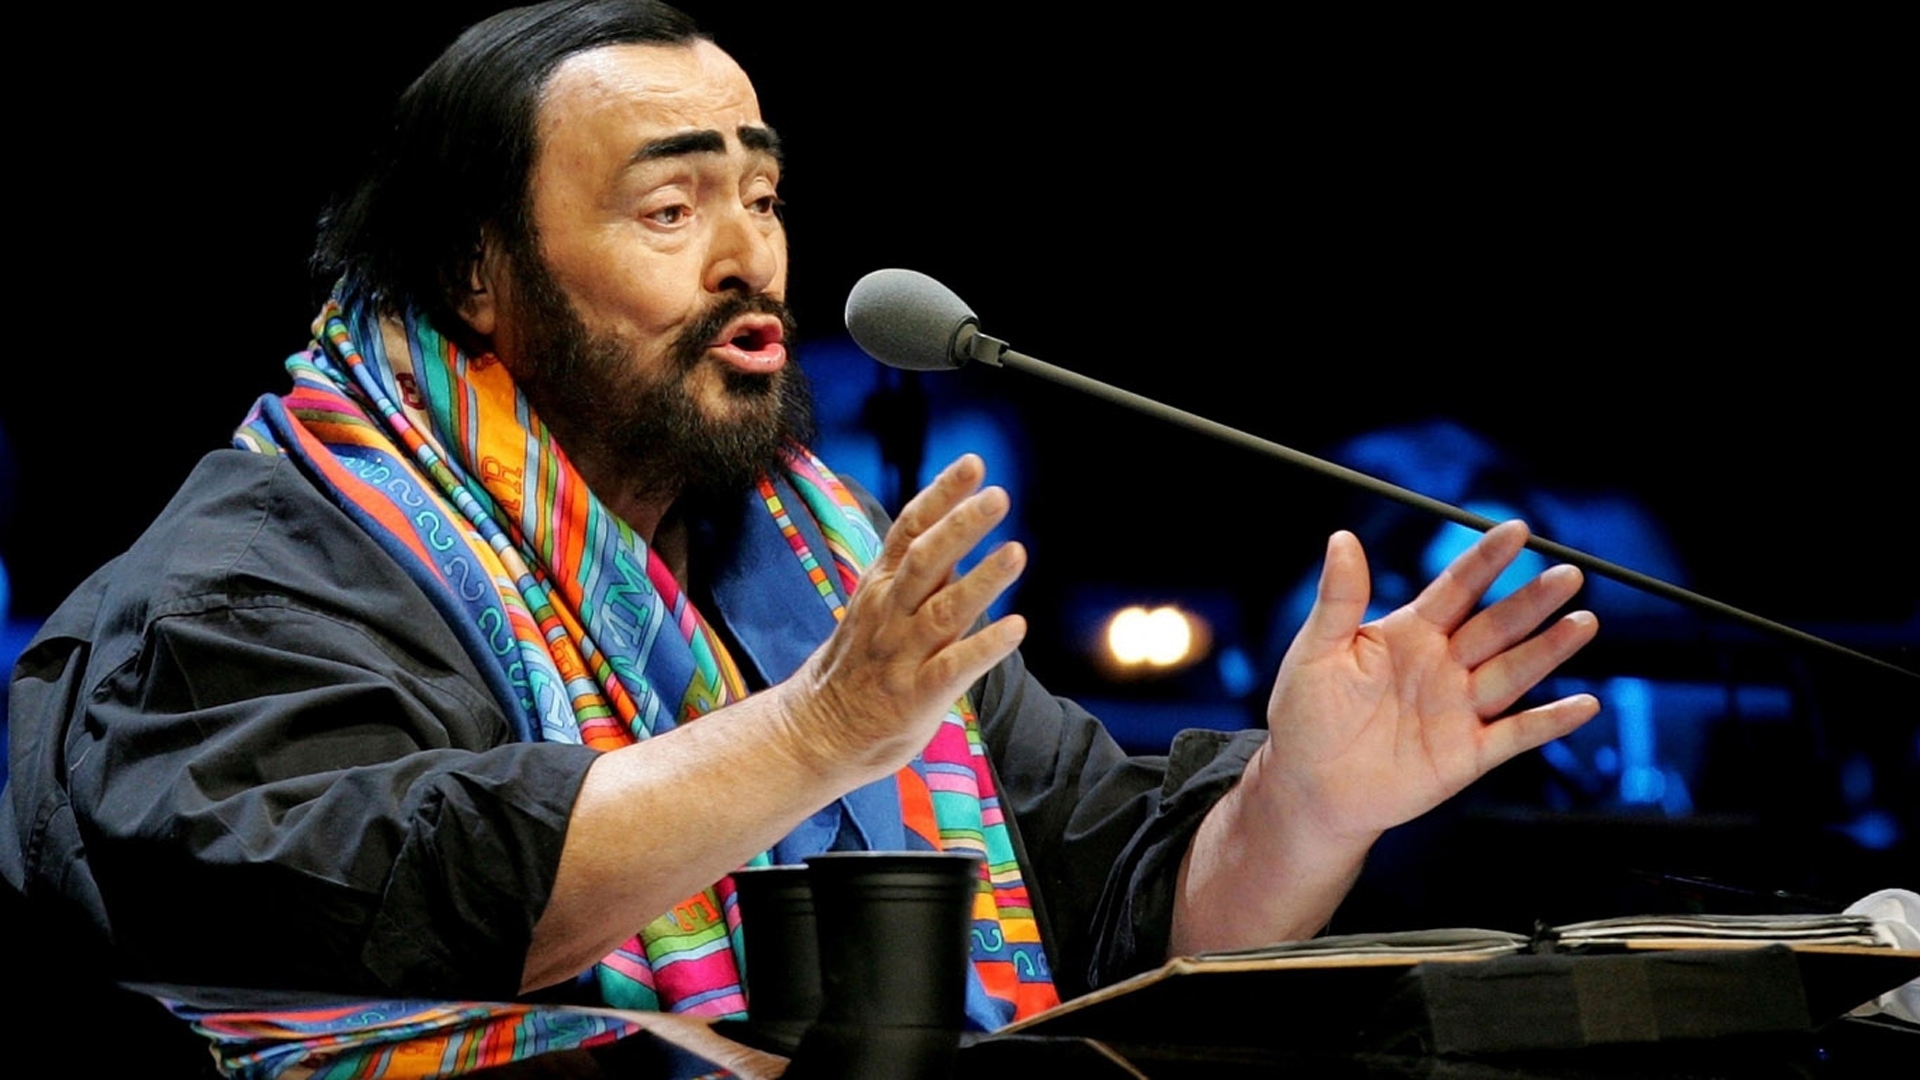 Nebbie av Luciano Pavarotti